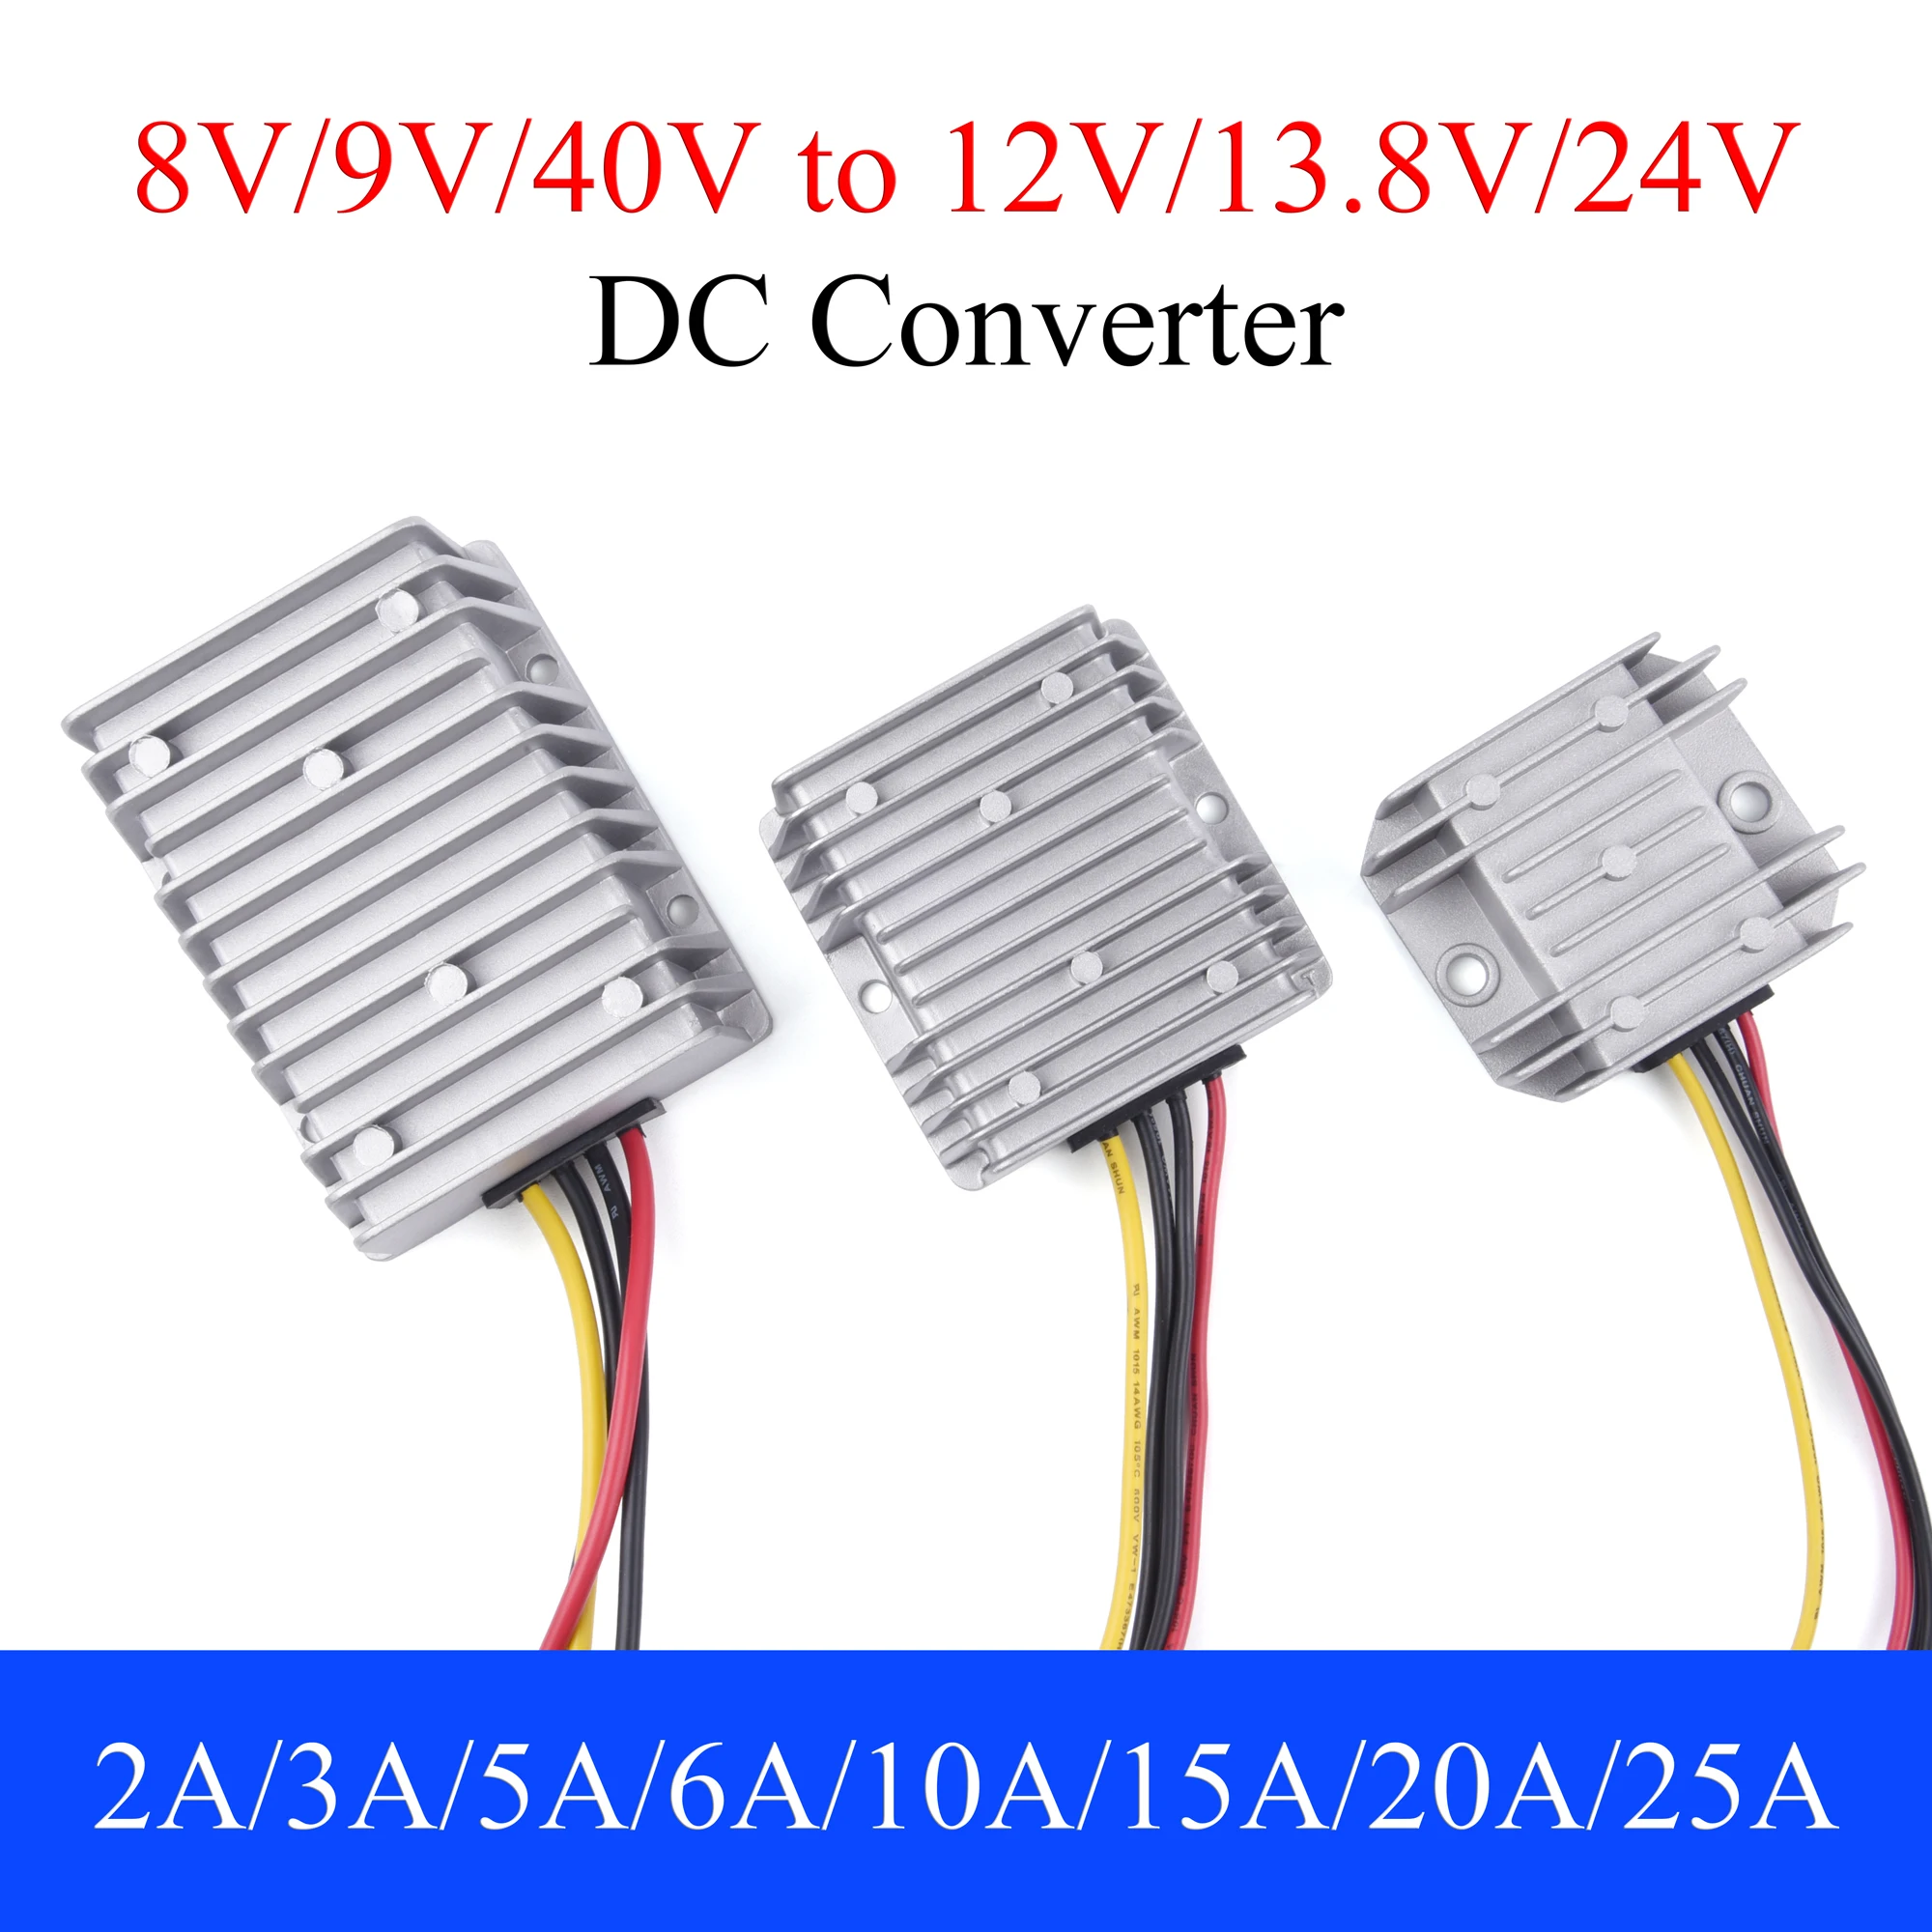 DC 8V/9V/40V to 12V/13.8V/24V Power Converter 3/4/5/6/10/15/20/25A Auto Boost Buck Regulator Stabilizer Voltage Supply For Car